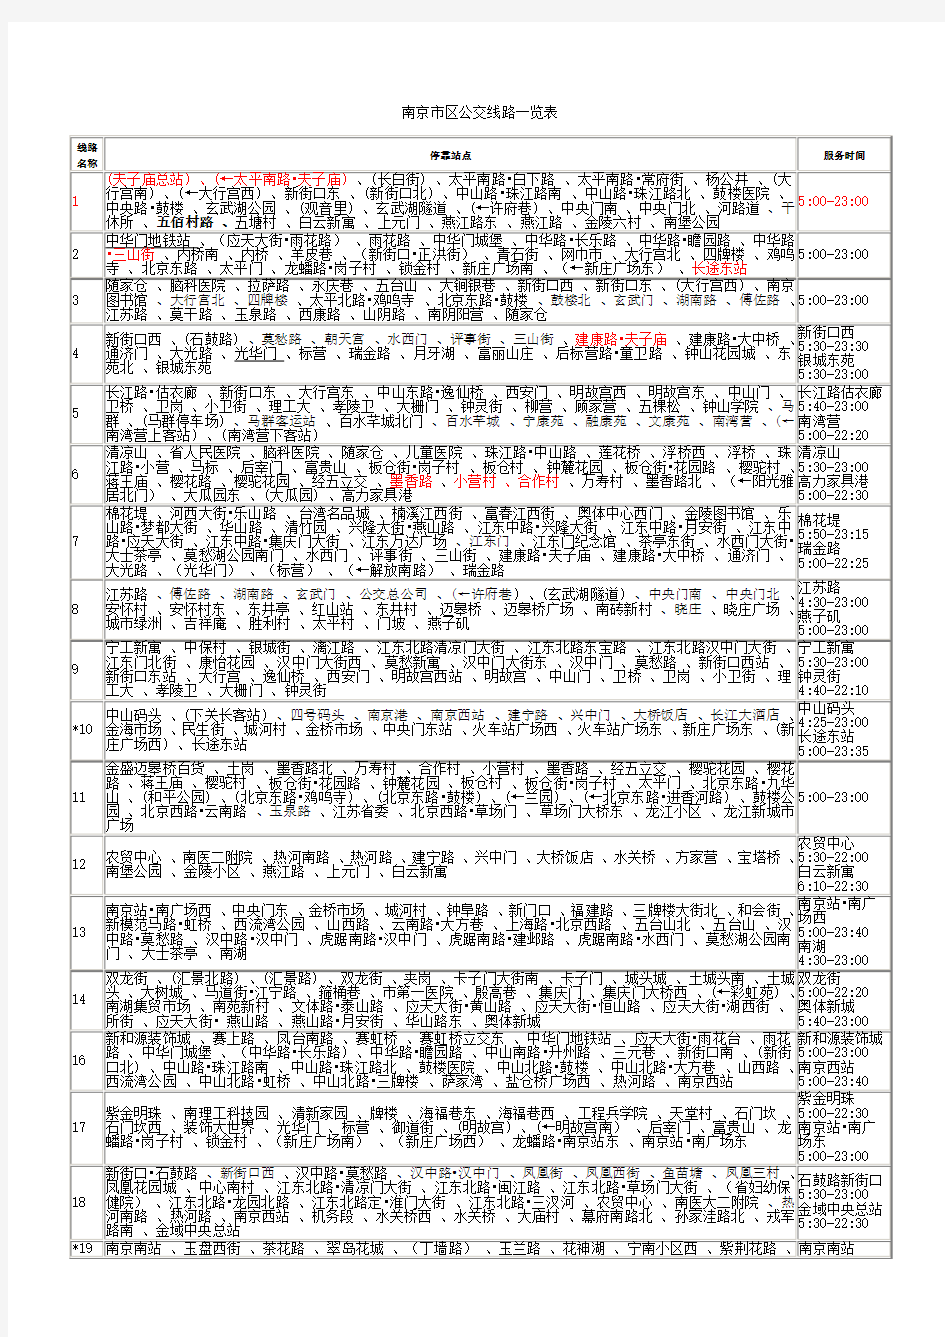 南京市区公交线路一览表 - 副本 (2)